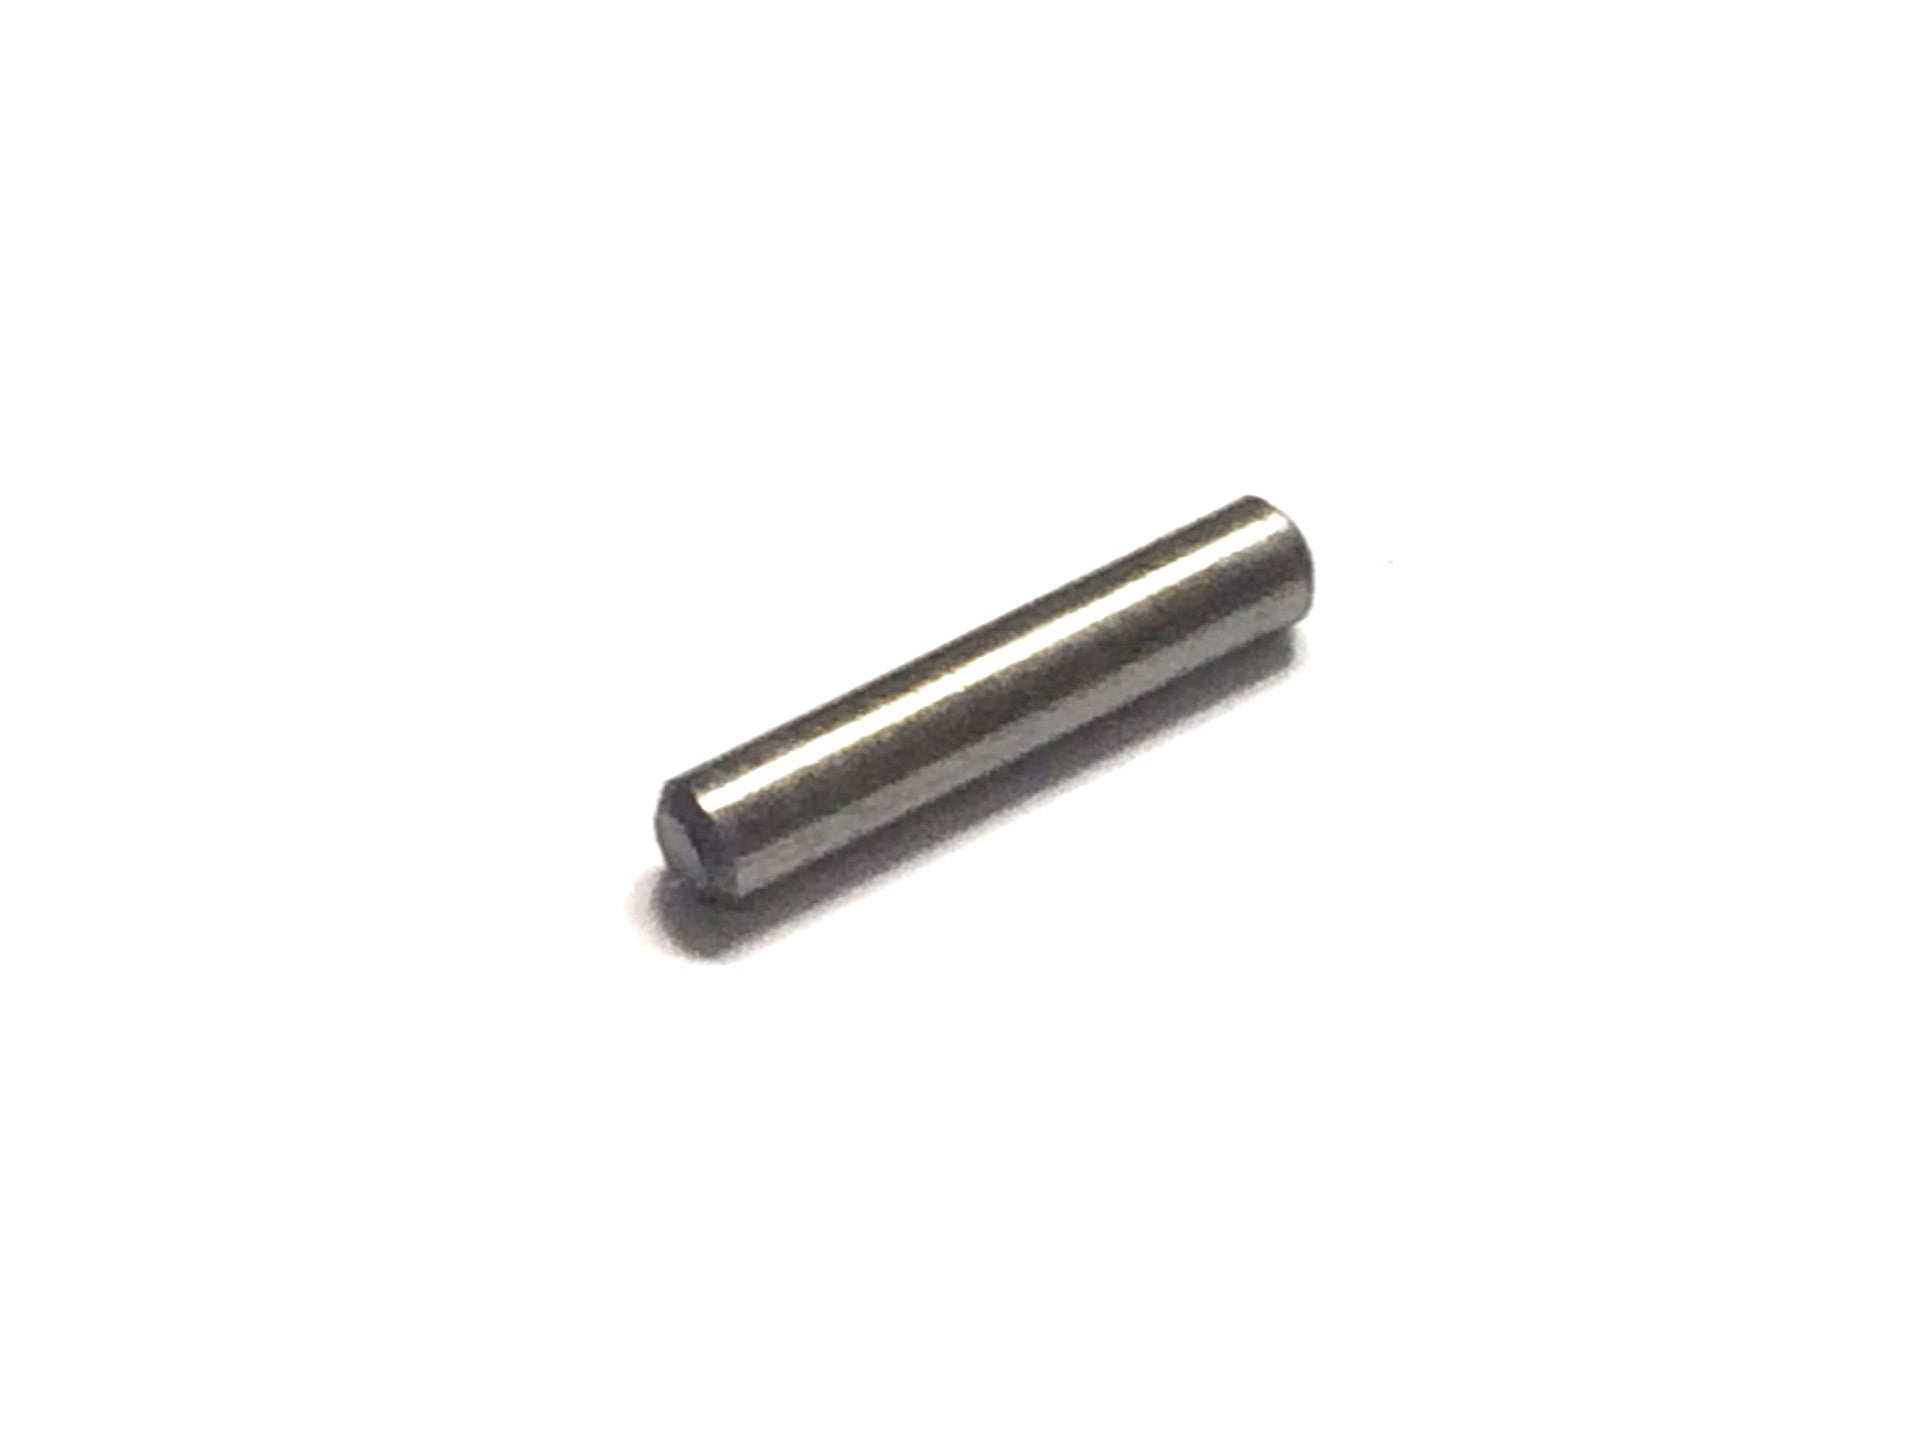 Brno Model 1 Trigger Pin